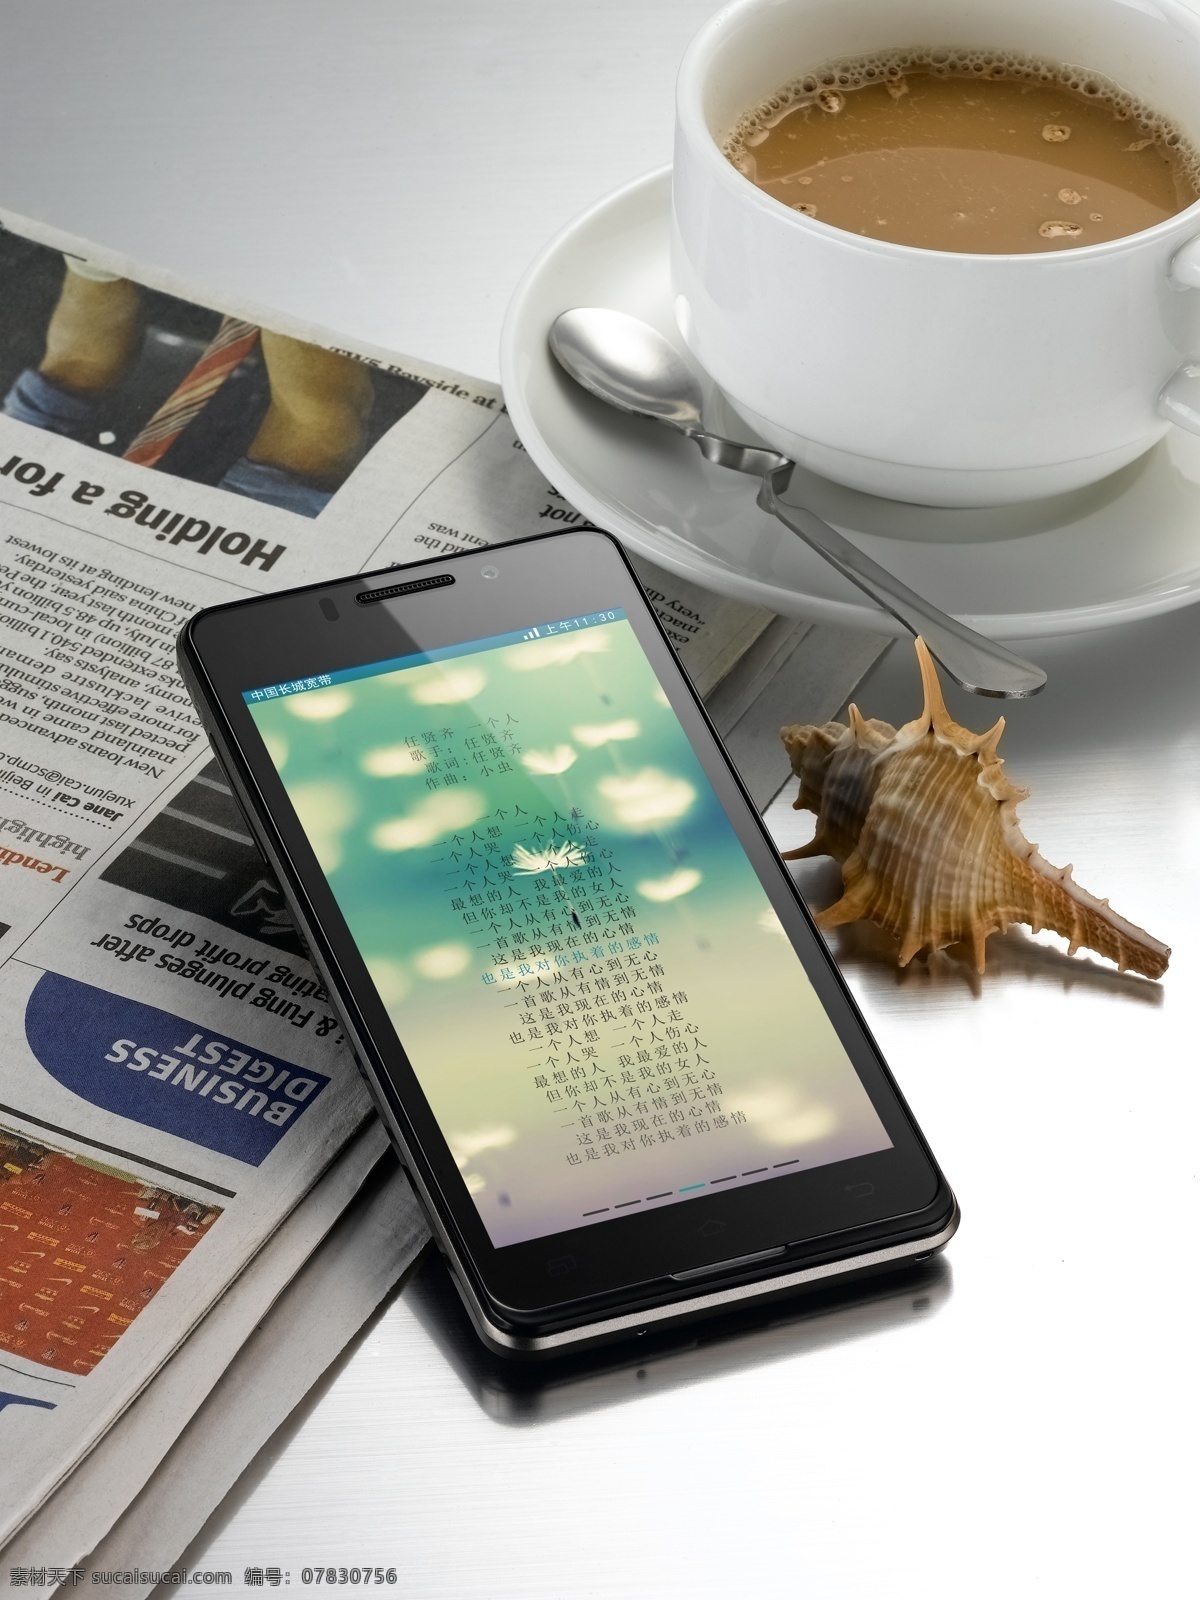 ui 工业生产 海螺 海星 界面 咖啡 咖啡杯 手机图片 手机 手机界面 手机ui 英文报纸 电子产品照 现代科技 app app界面